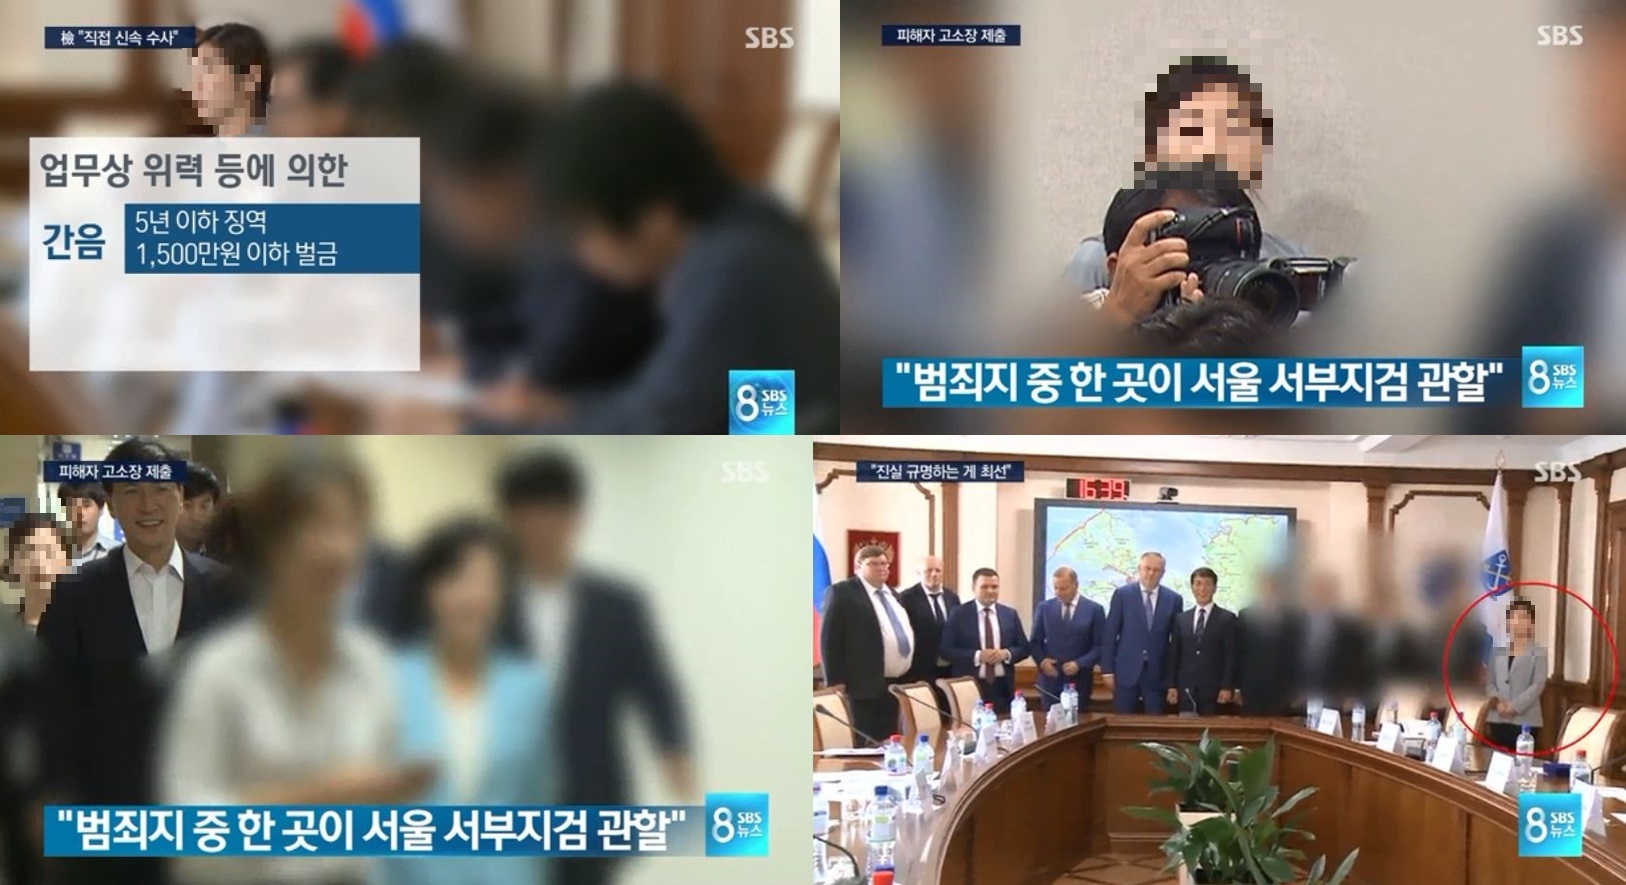 ▲ 피해자 과거 모습 찾아 부각한 SBS 8뉴스 보도화면. (피해자 얼굴 모자이크 처리는 민언련.)